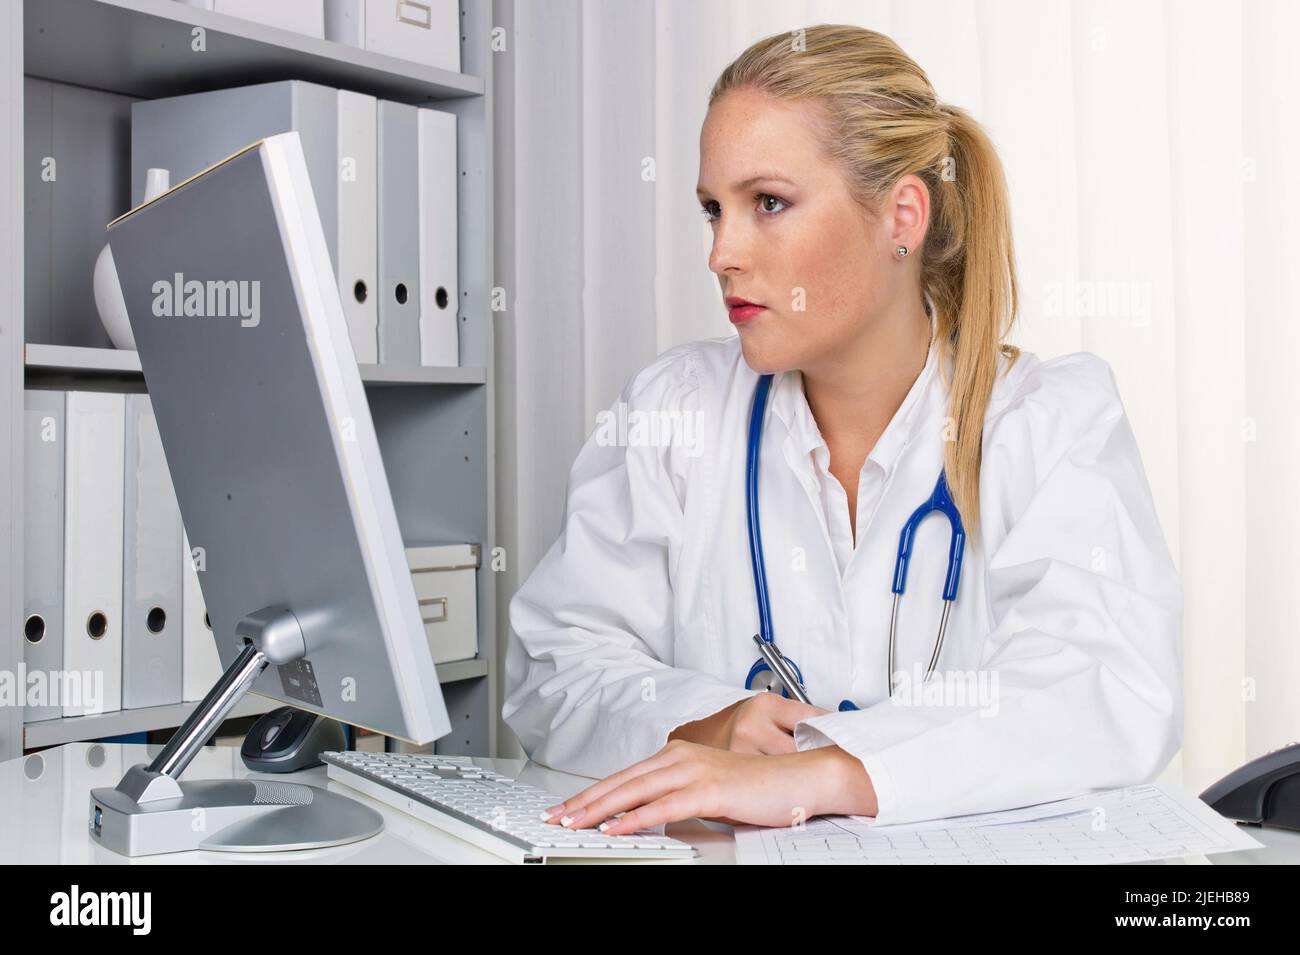 Eine junge Ärztin mit Stethoskop in ihrer Arztpraxis. Stock Photo